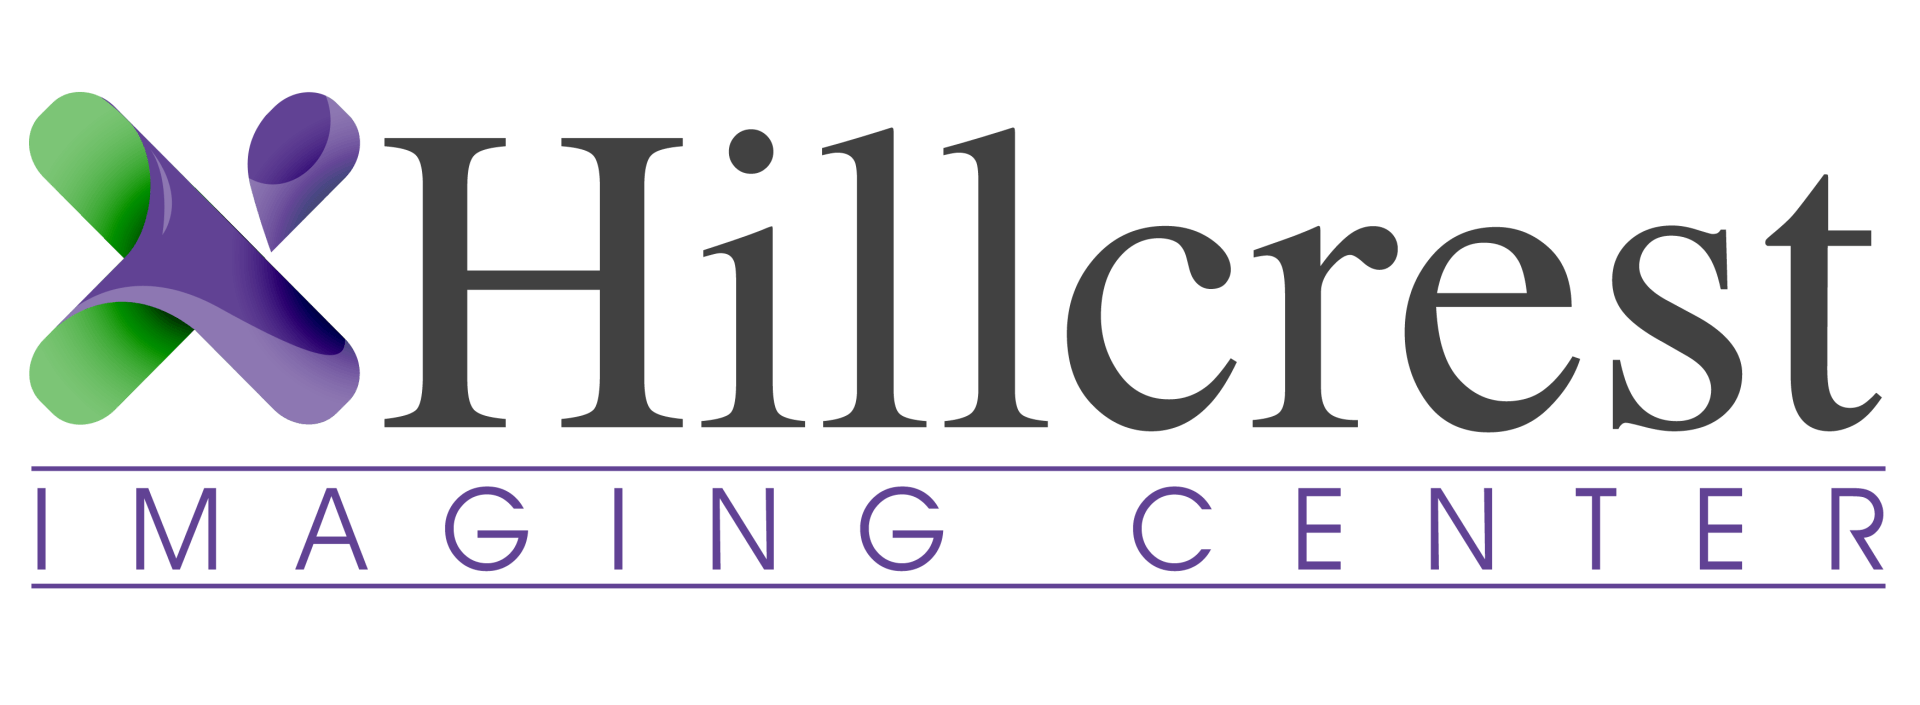 Hillcrest Imaging Center logo